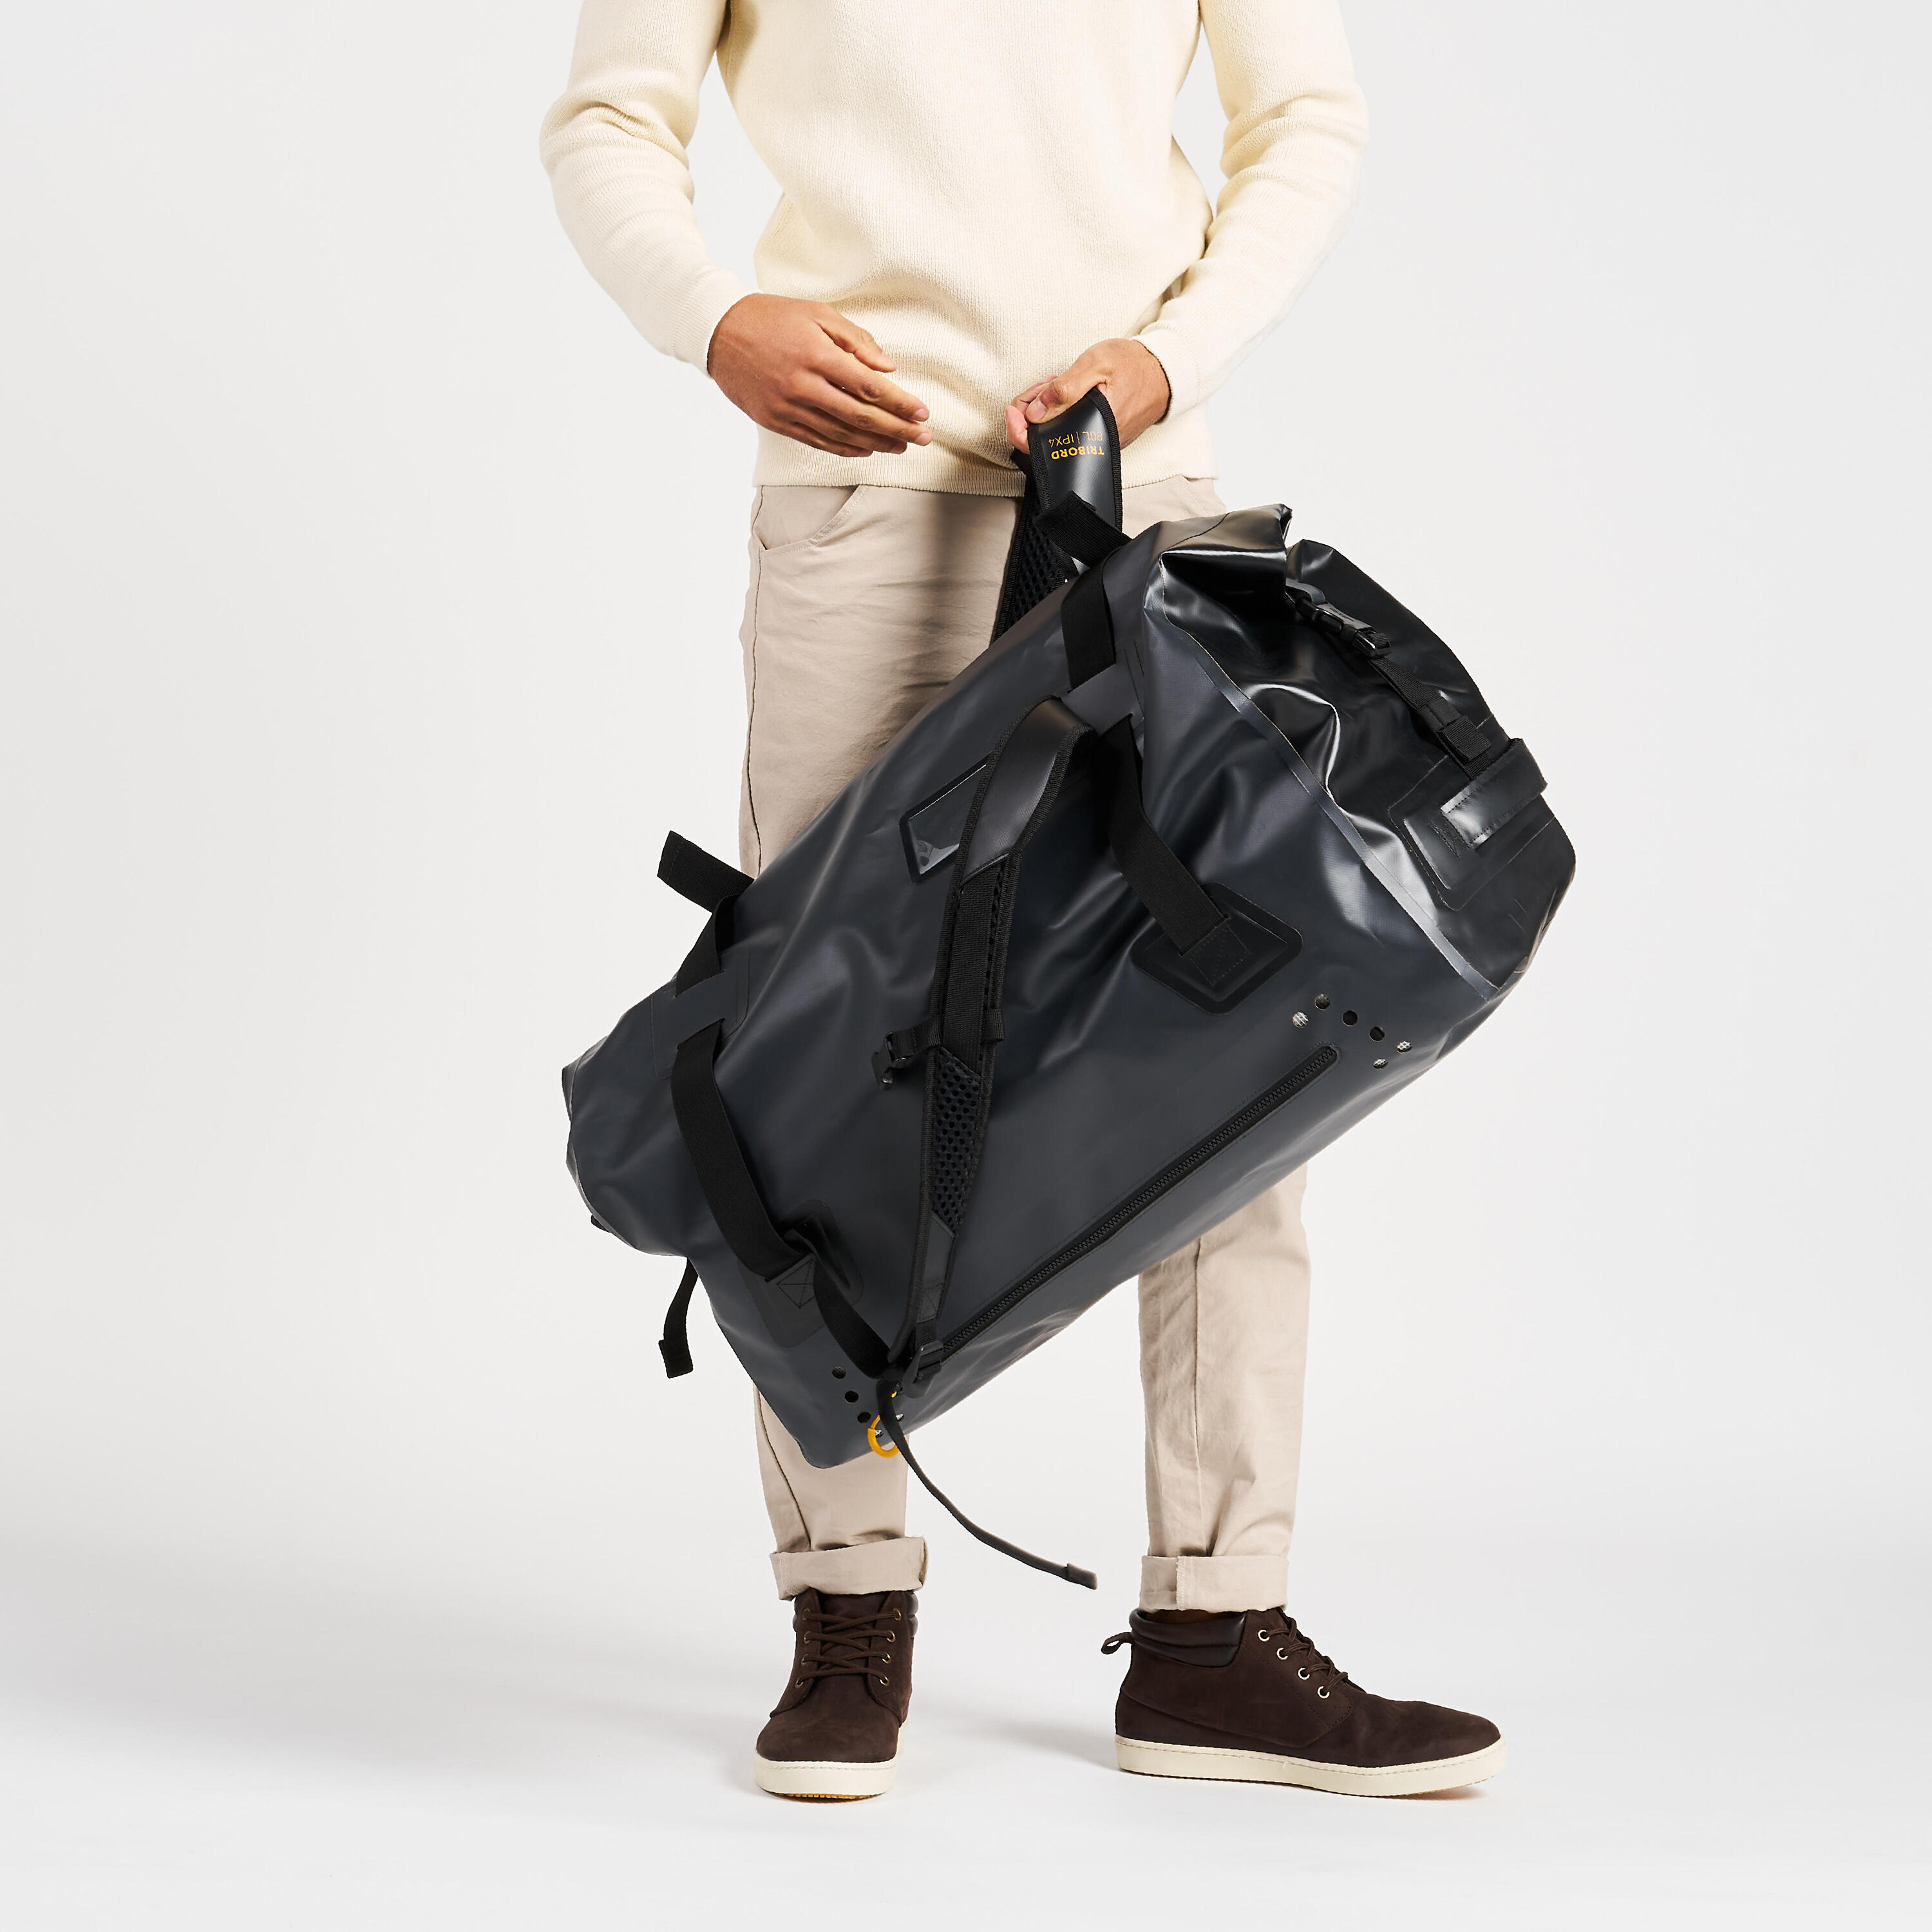 Waterproof duffle bag - 80 L travel bag Anthracite black 12/16